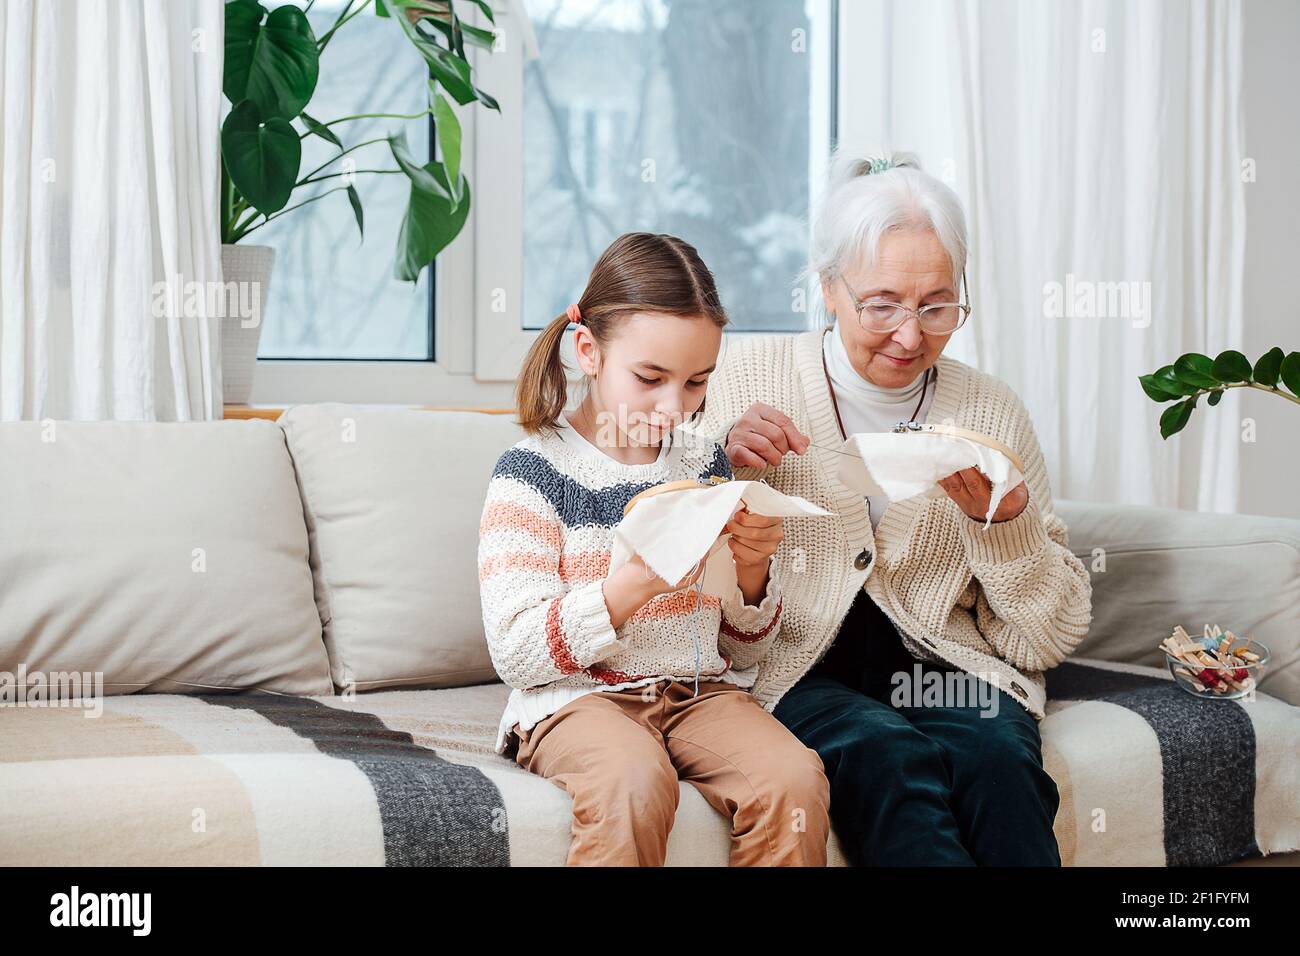 Une petite fille de sept ans et sa grand-mère à cheveux gris de soixante-dix ans, ensemble, sont passionnées par la broderie. Banque D'Images